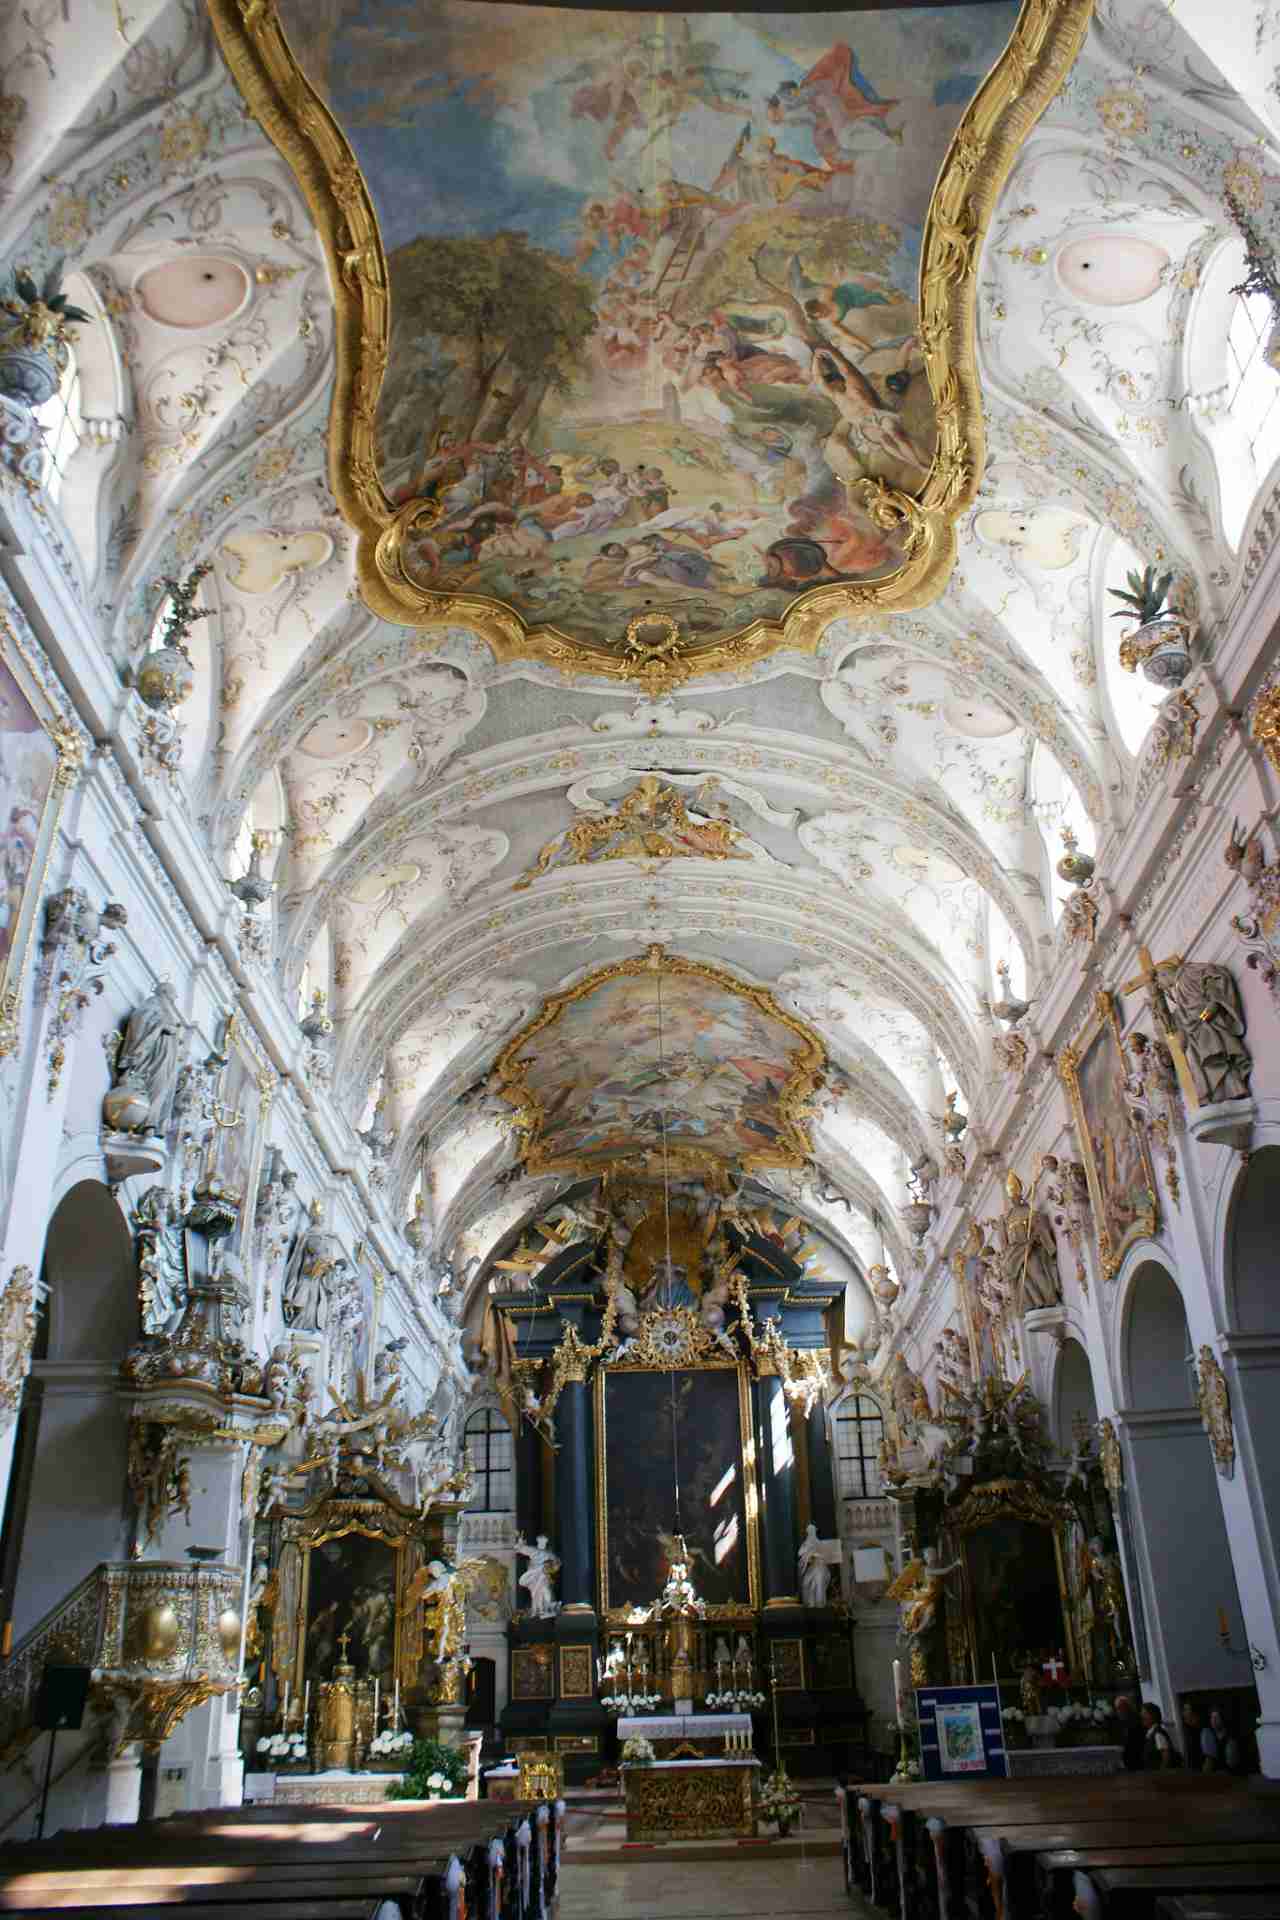 Saint Emmeram’s Abbey, Regensburg, Germany